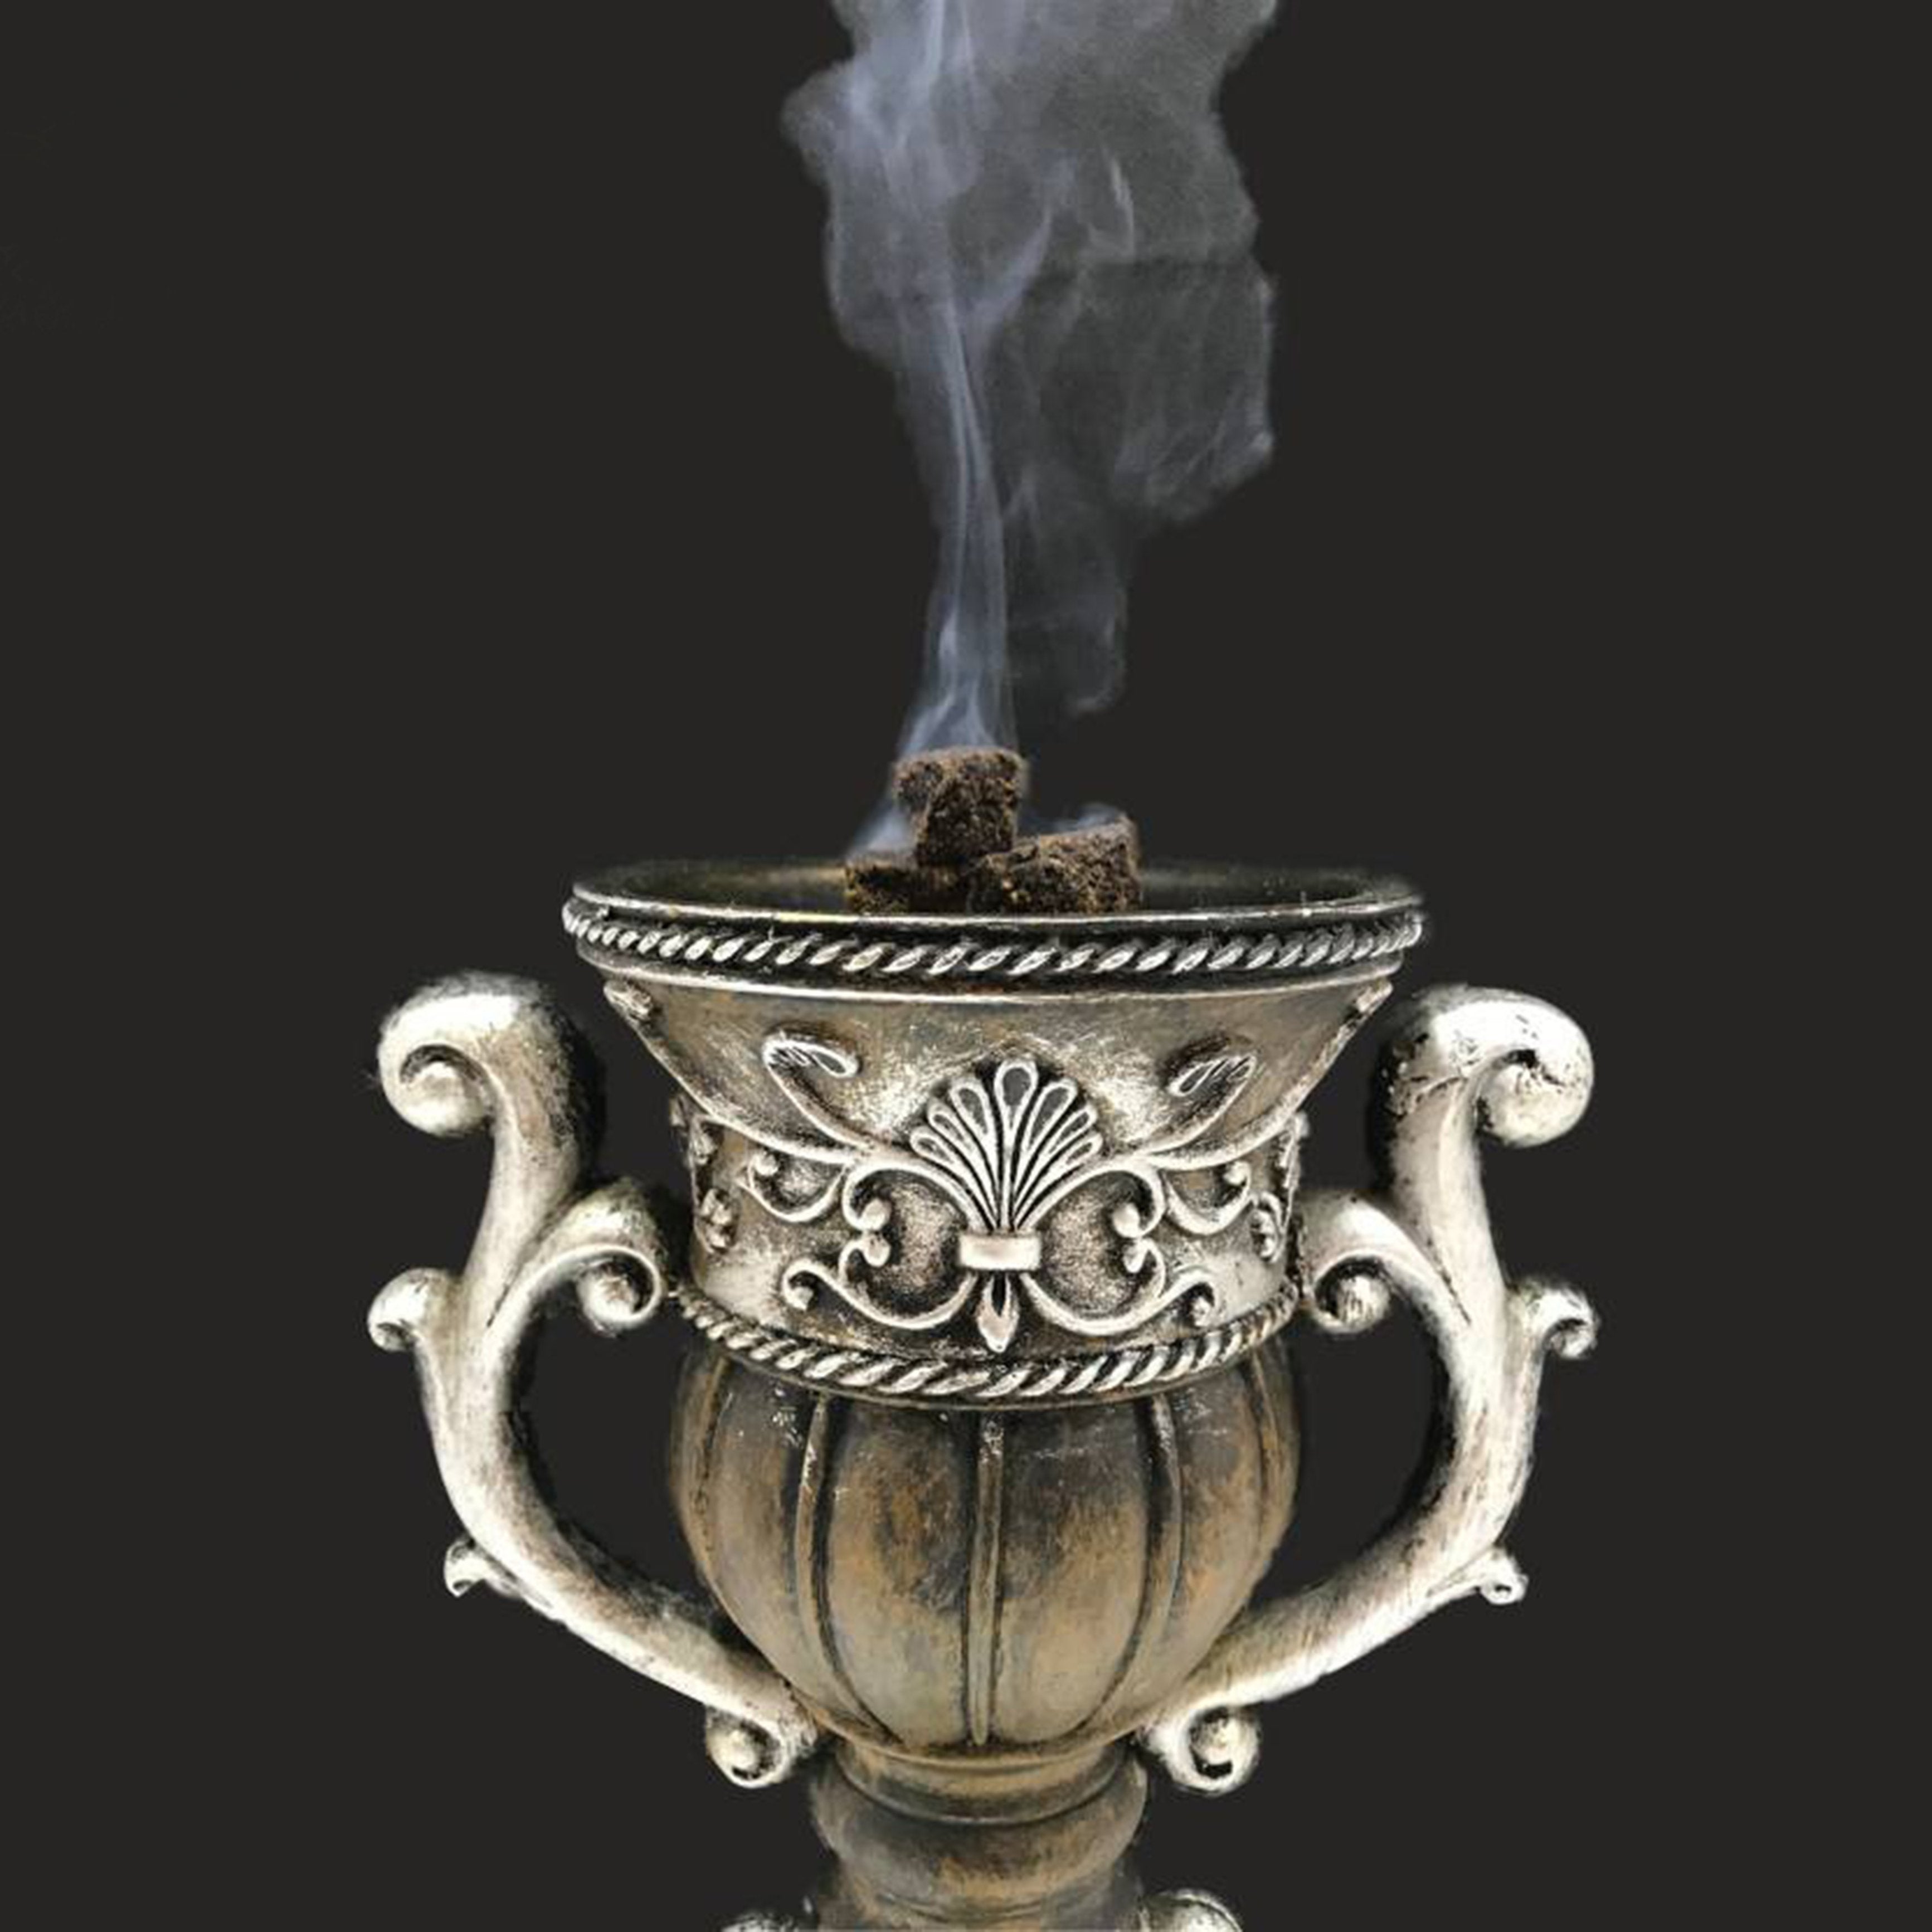 Al Alif Bukhoor Oudh Al Firdous Pure Original Incense Paste Home Fragrance - 50g